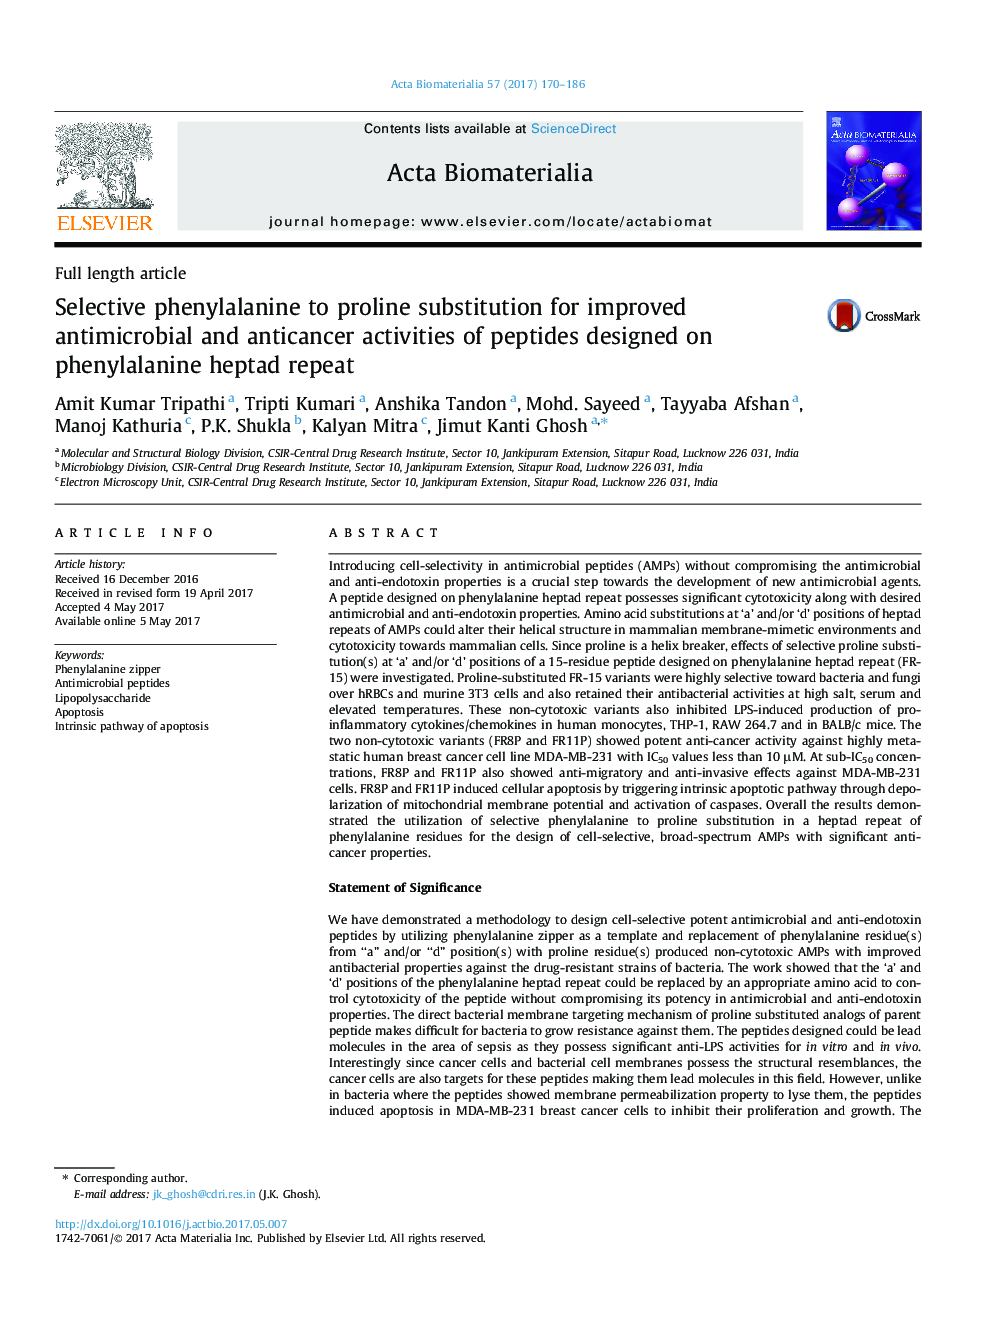 مقاله کامل مقاله فنیل آلانین انتخابی به جایگزینی پرولین برای بهبود فعالیت ضد میکروبی و ضد سرطانی پپتیدهای طراحی شده در تکرار فنیل آلانین هپاتاد